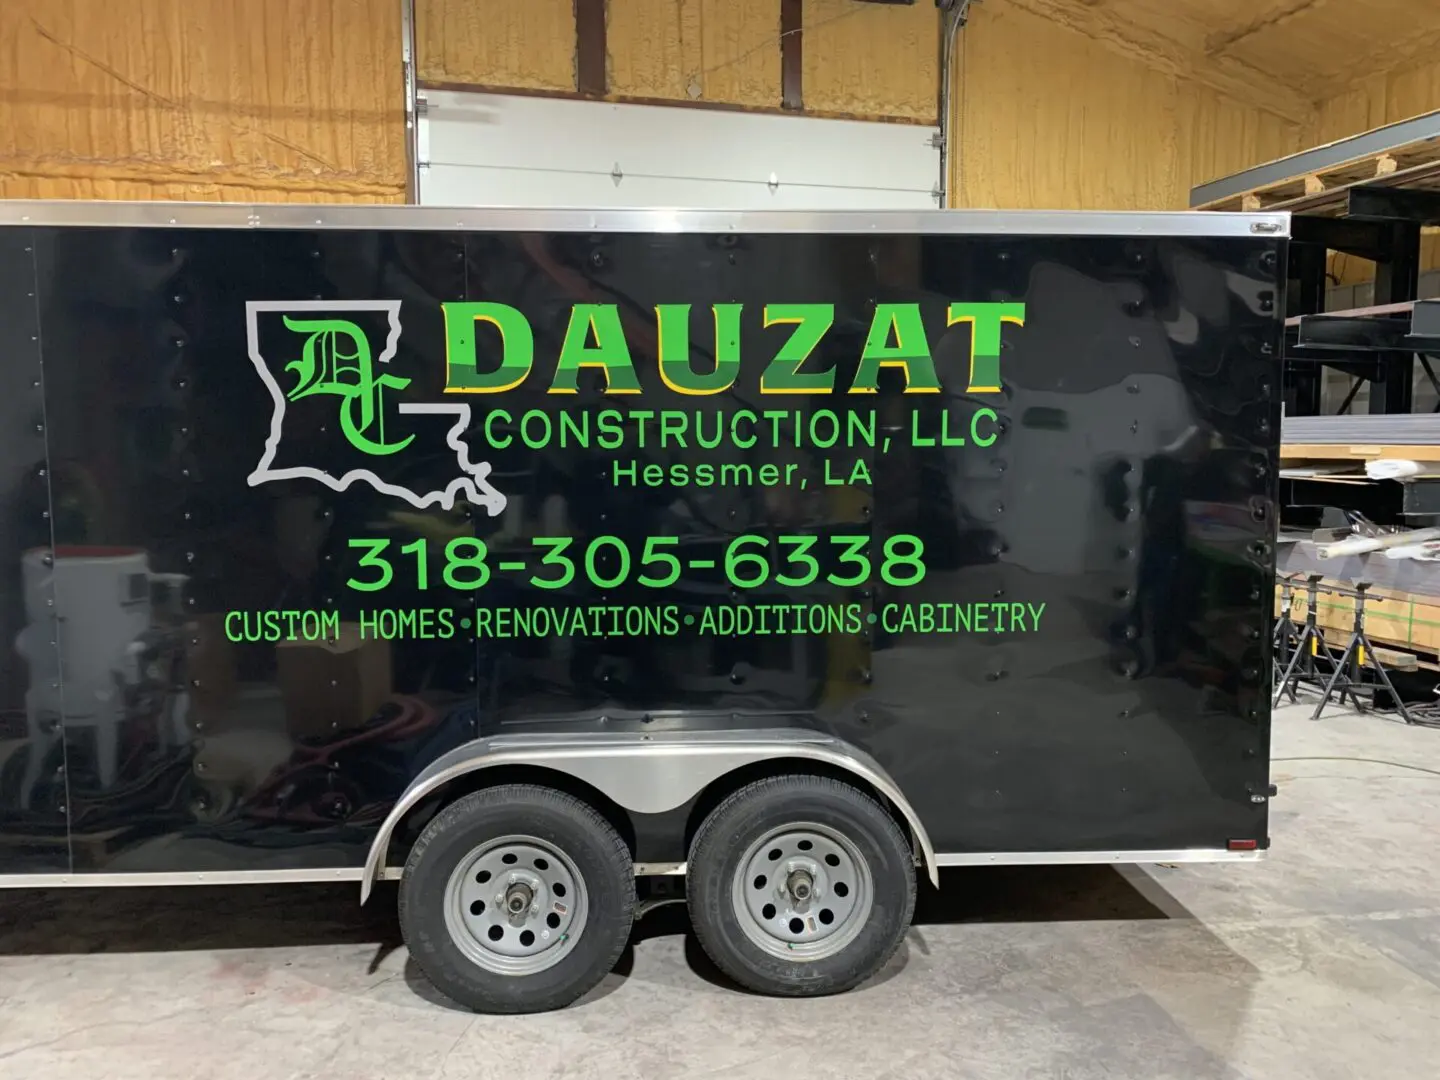 Dauzat Construction, Contractor Trailer Wrap, Marksville, Louisiana, HLA Signs